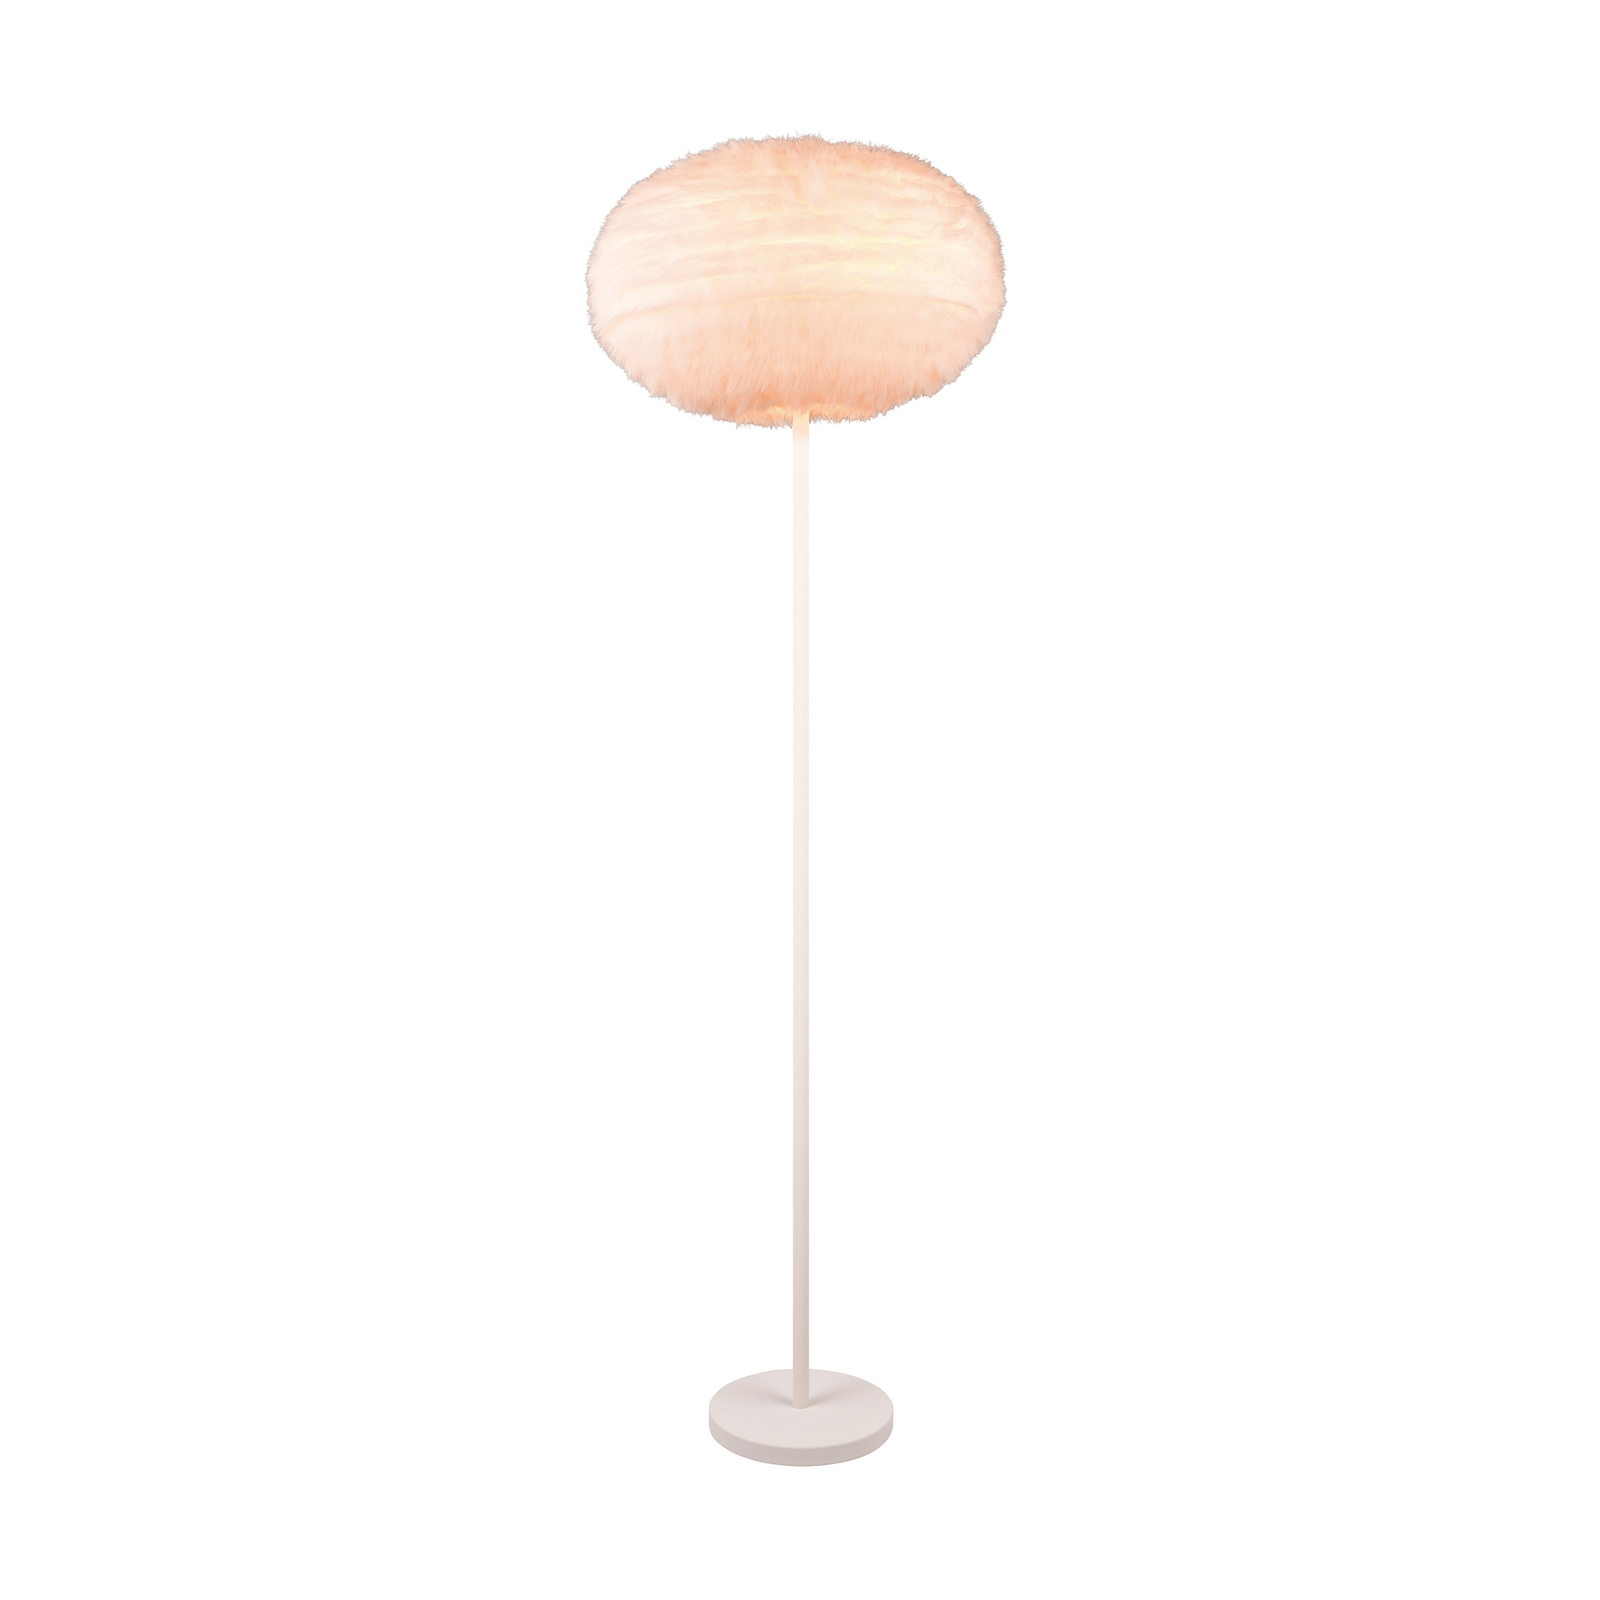 Chlupatá stojací lampa, výška 154 cm, písková barva, syntetický plyš